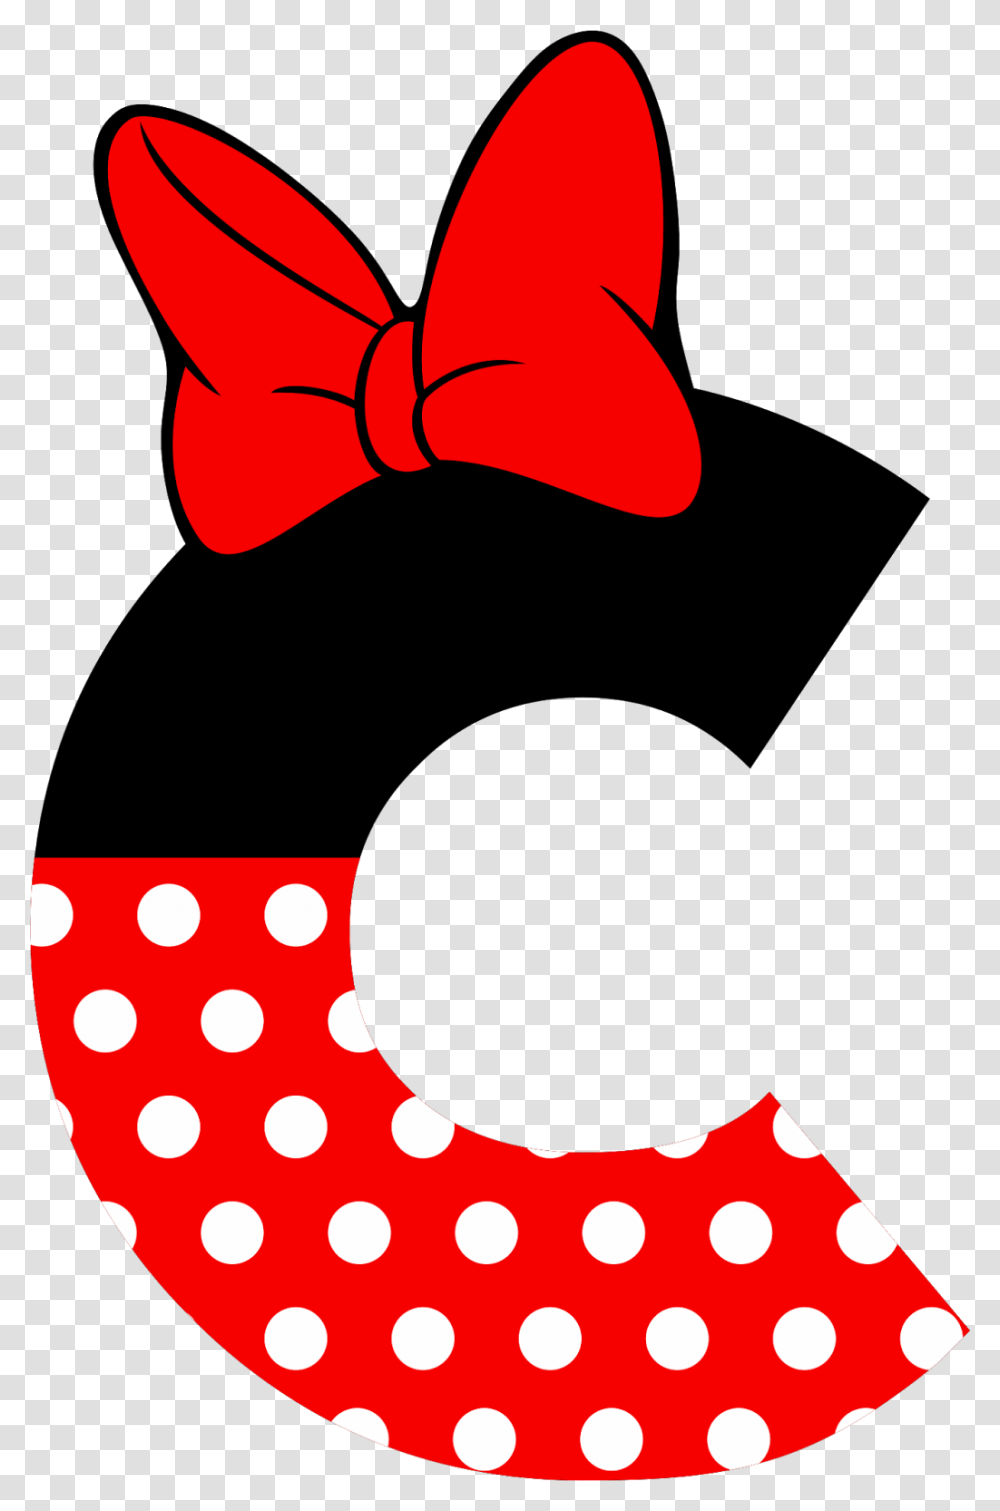 Letter Clipart Minnie Mouse Minnie Mouse Letter S, Tie, Accessories, Accessory, Necktie Transparent Png